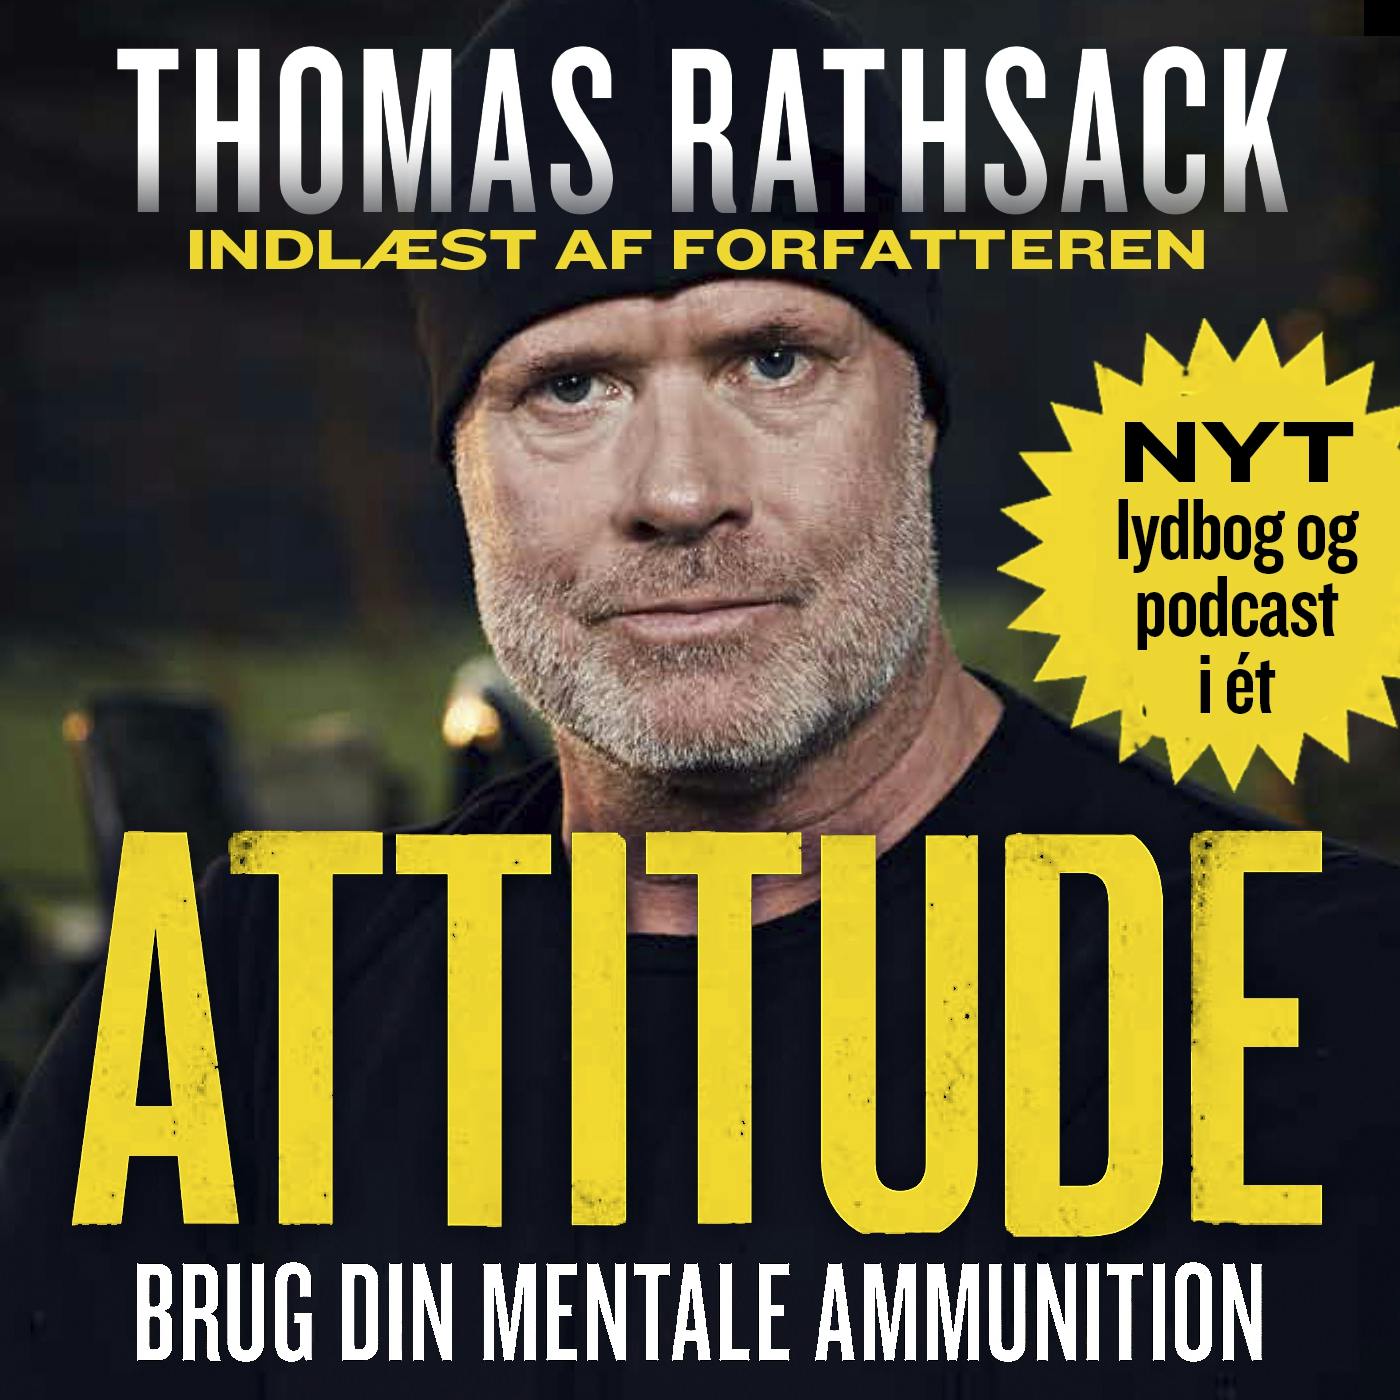 Attitude: Brug din mentale ammunition - undefined